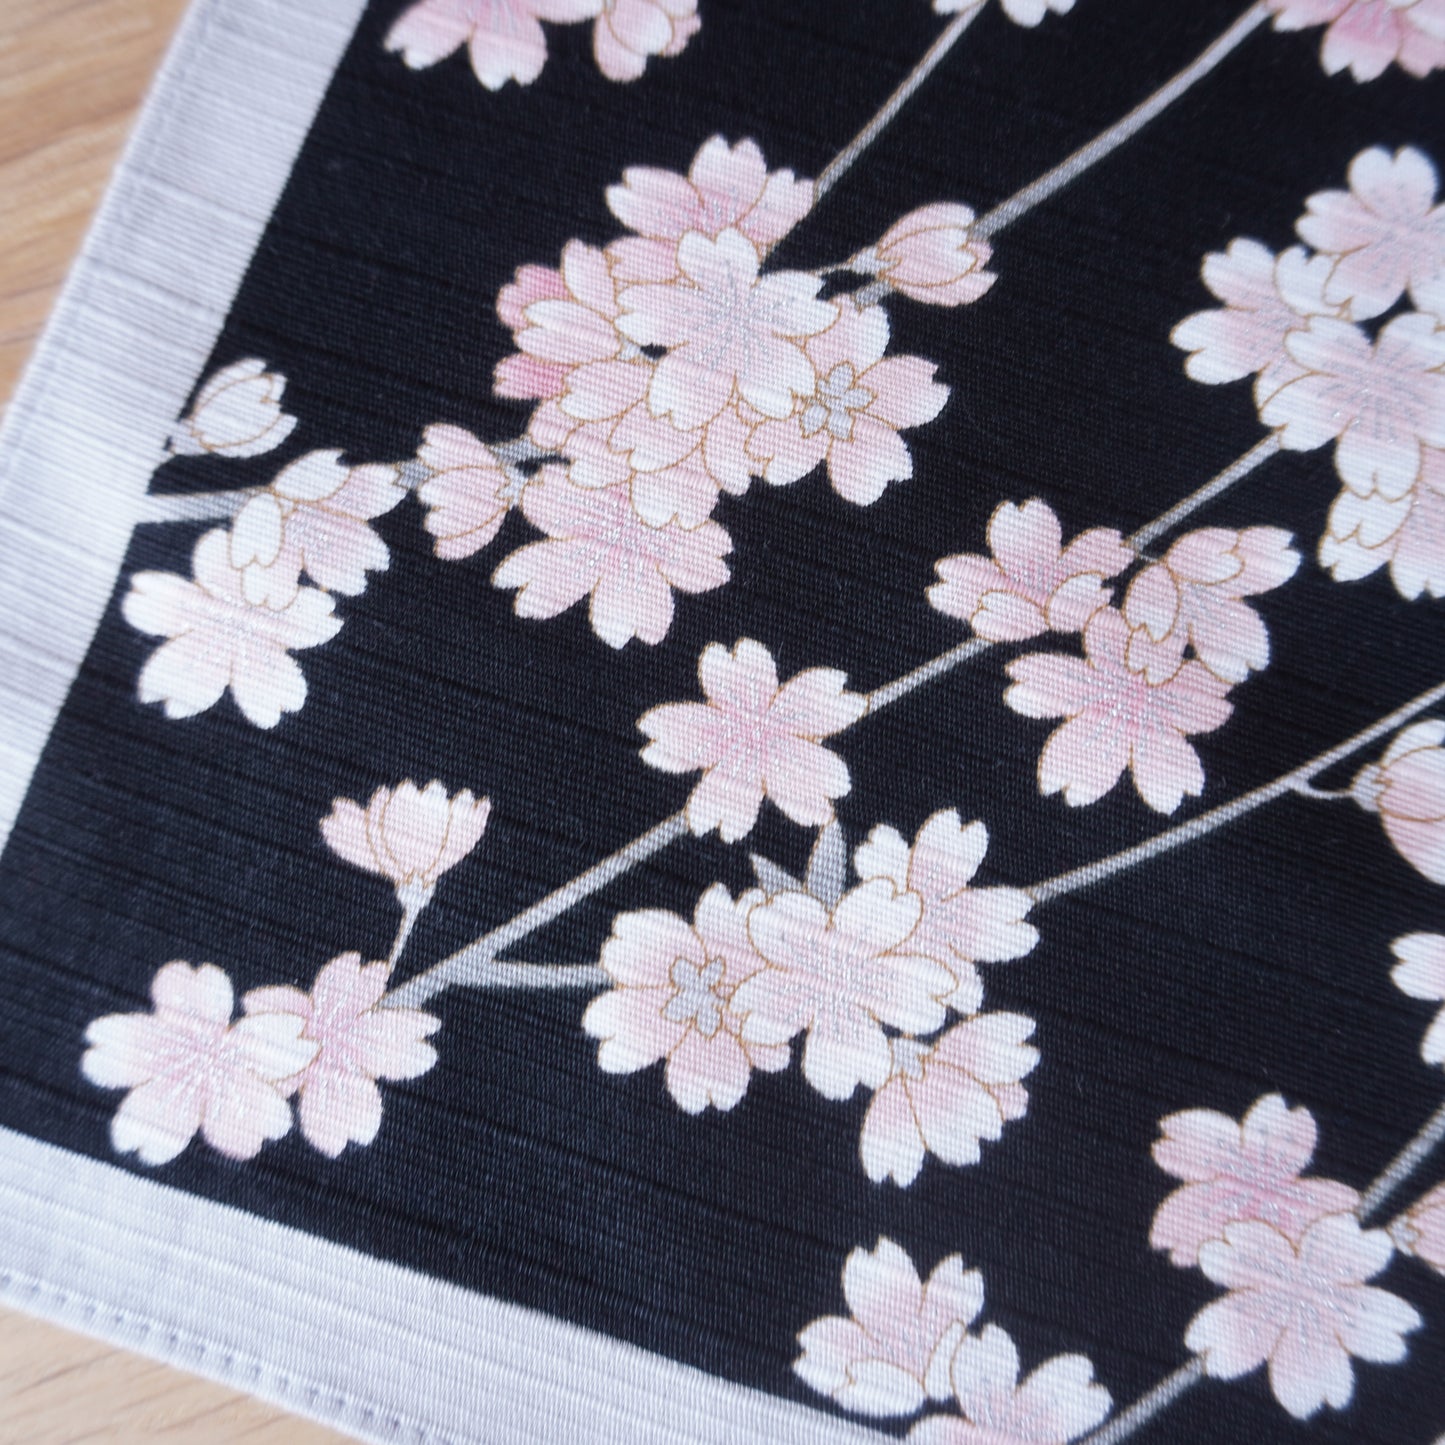 Black Cherry Blossoms, Sakura Furoshiki, 50 x 50cm